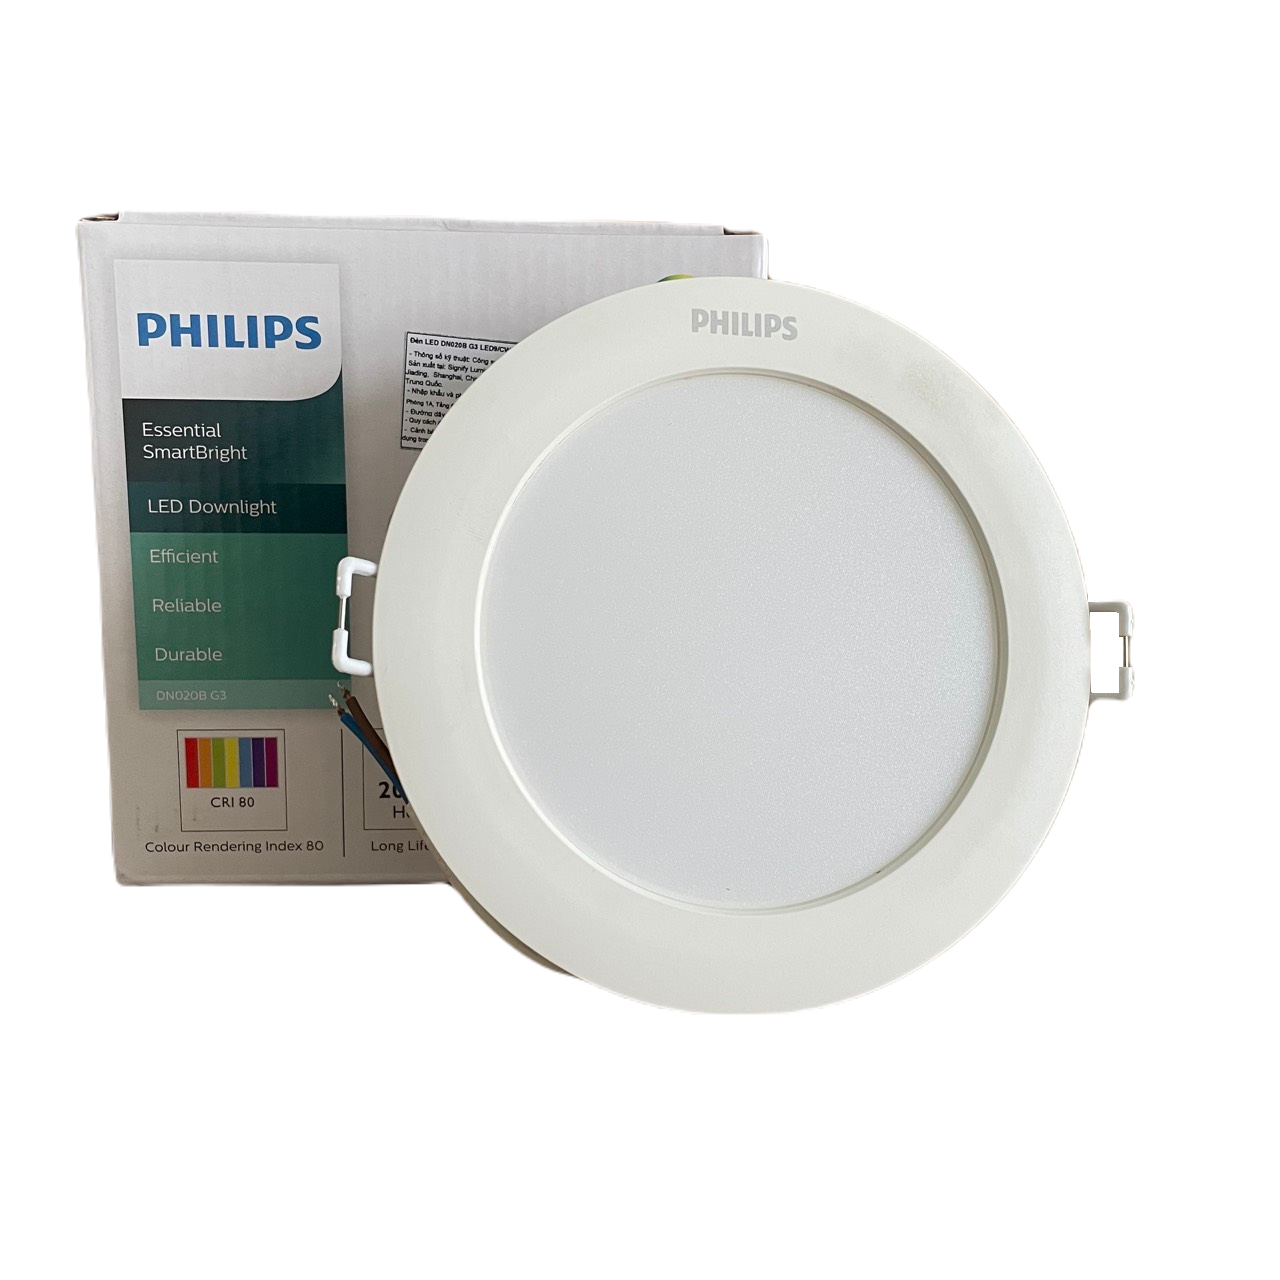 Đèn downlight âm trần LED Philips Essential SmartBright DN020B G3 LED12/NW 14W 220-240V D150 GM